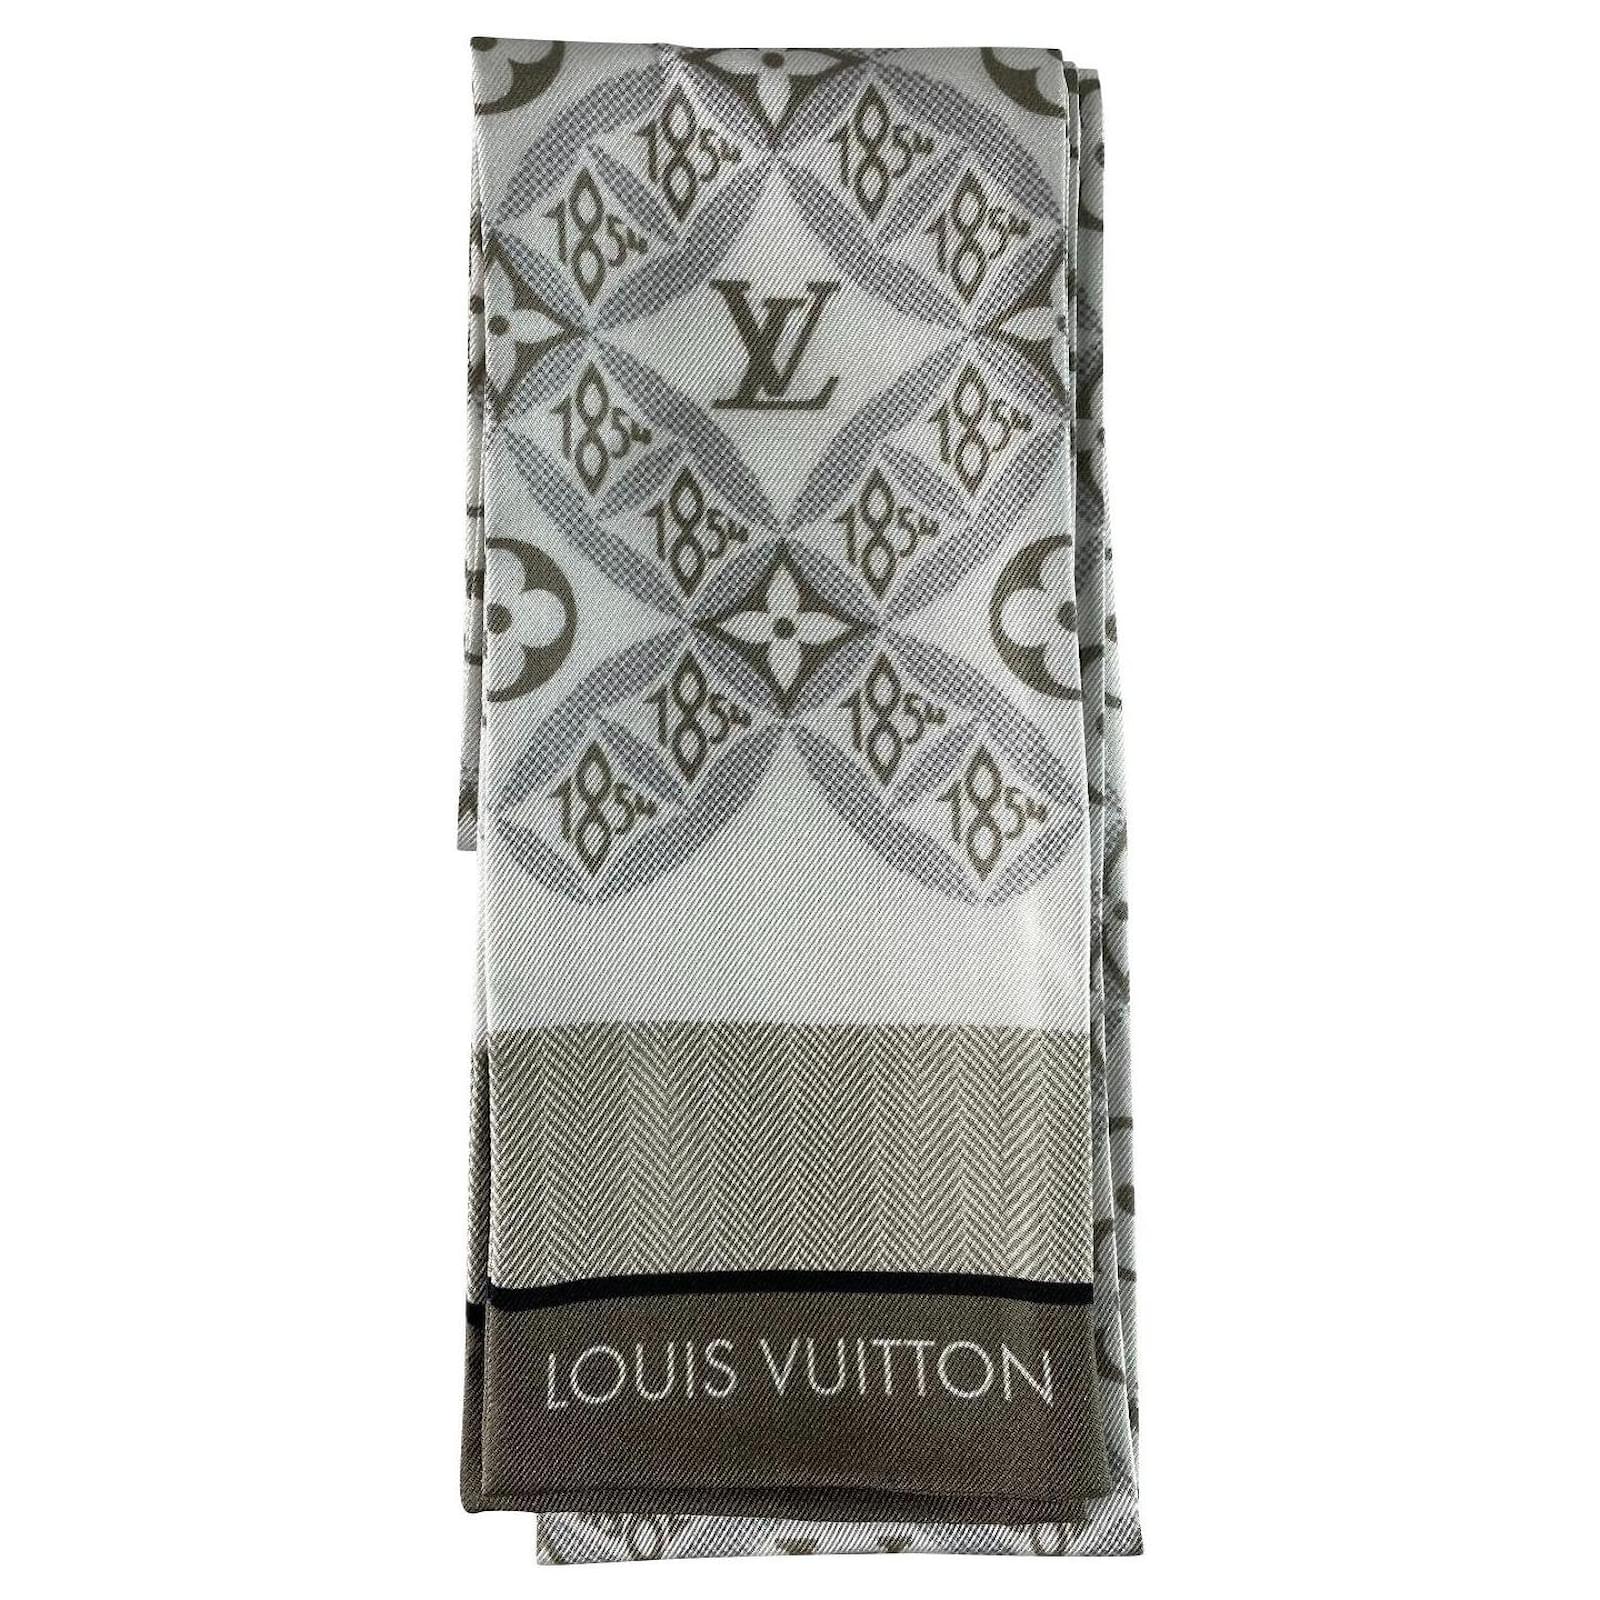 Louis Vuitton lv 1854 bandeau or stole collection, Women's Fashion